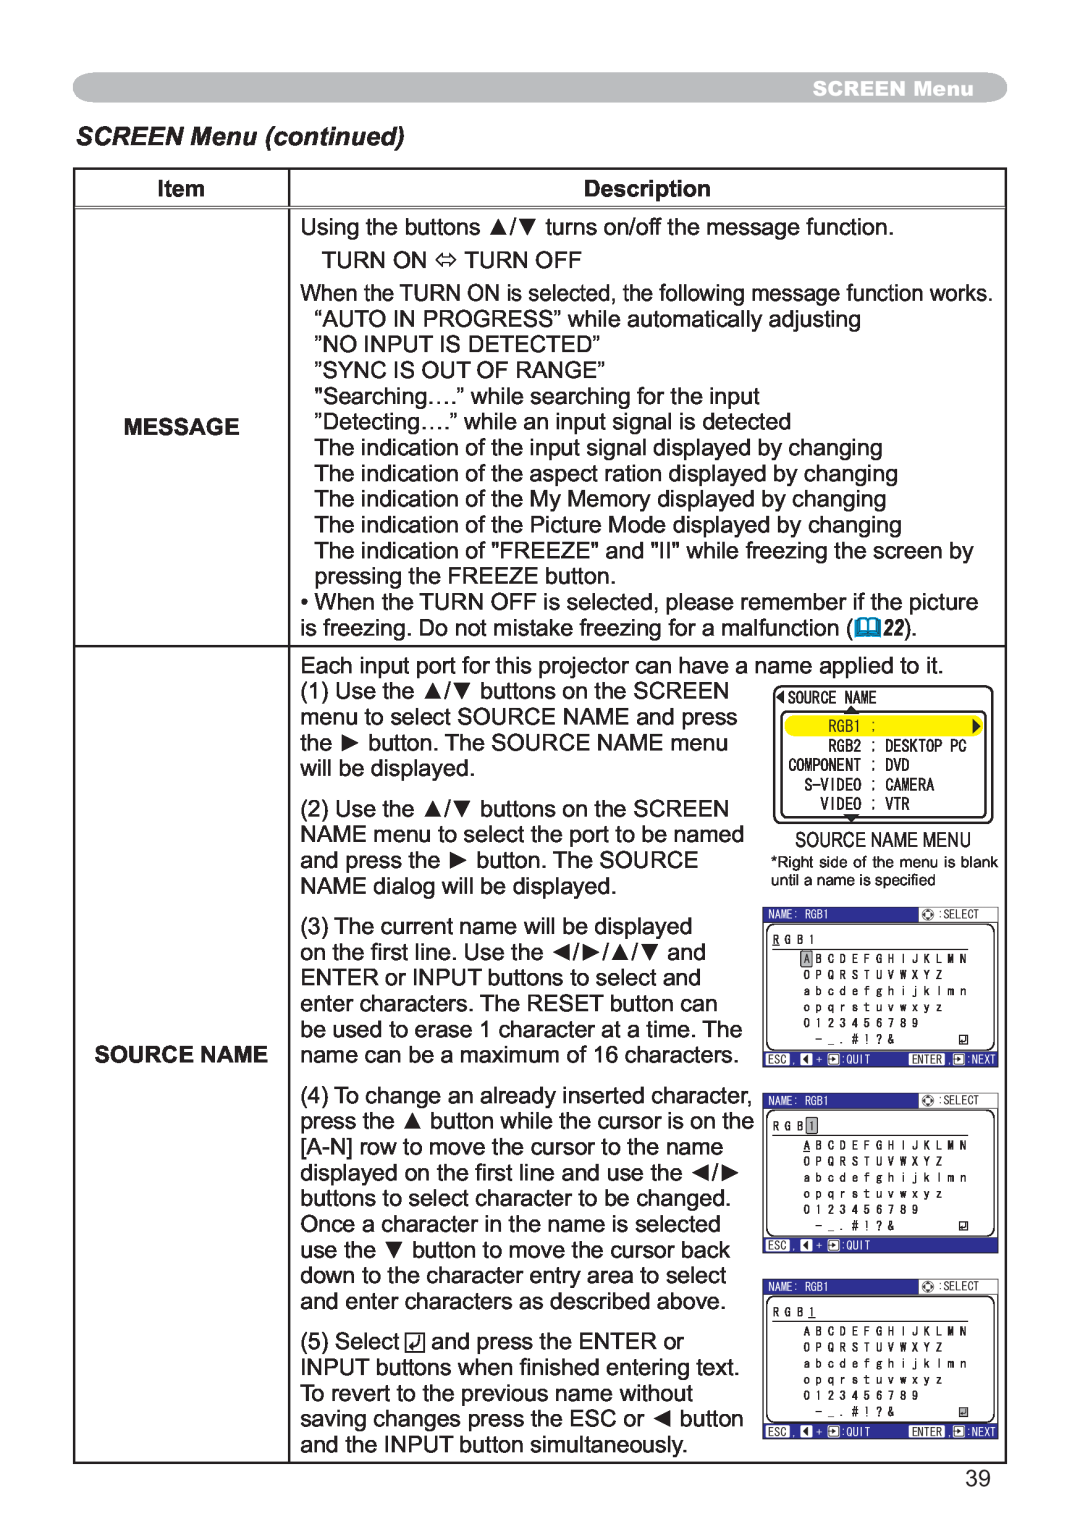 Hitachi ED-X12 user manual SCREEN Menu continued, Item, Description, Message 